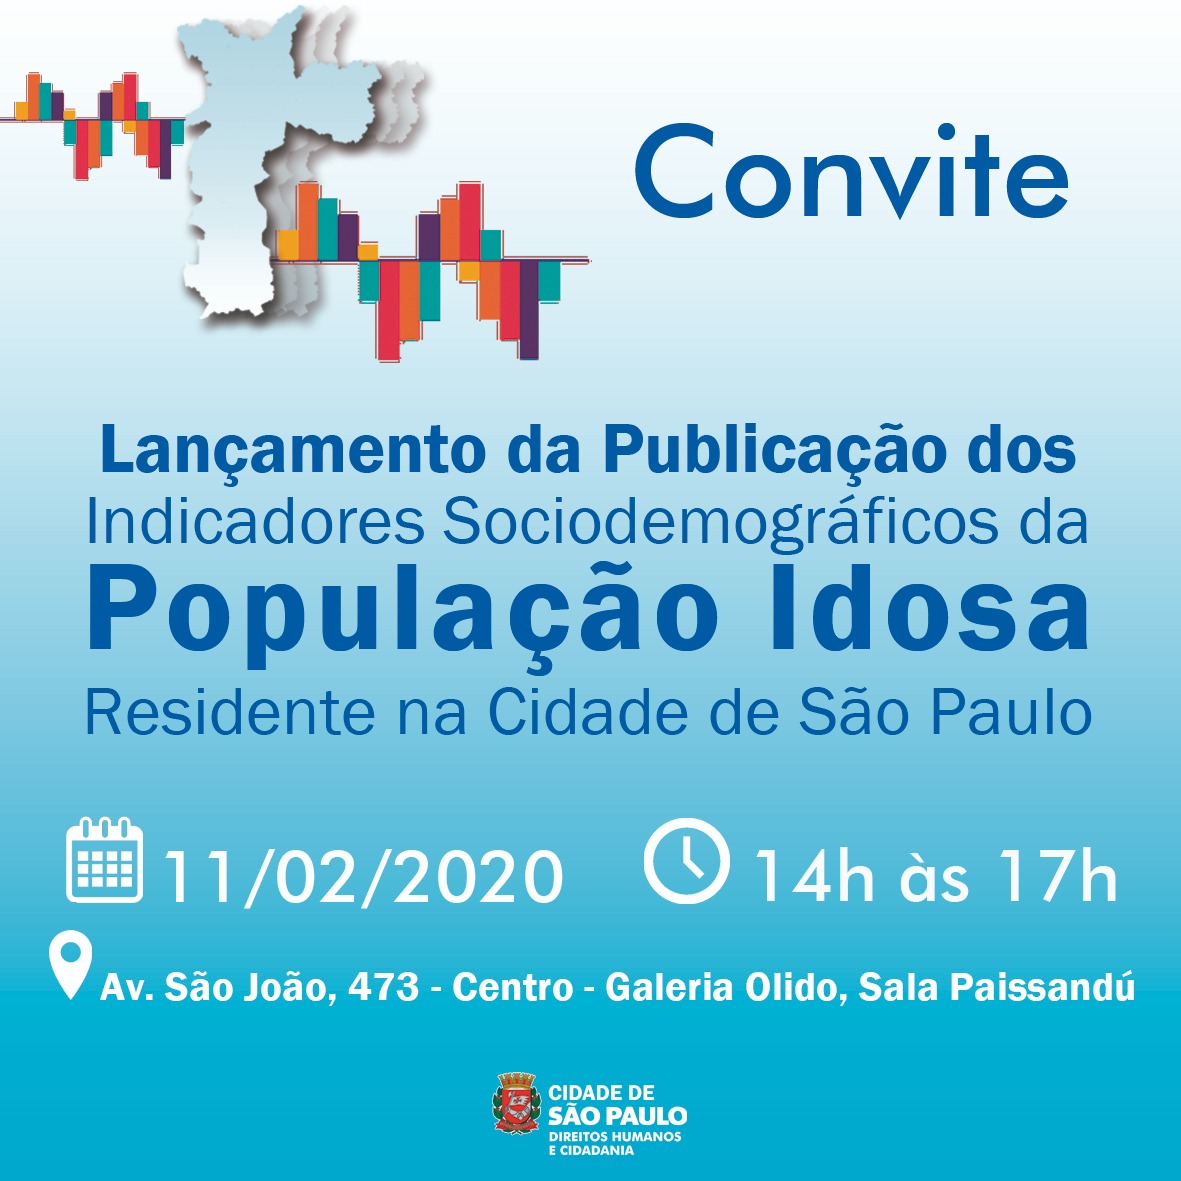 Convite do lançamento da publicação dos indicadores sociodemográficos da população idosa residente na cidade de São Paulo.